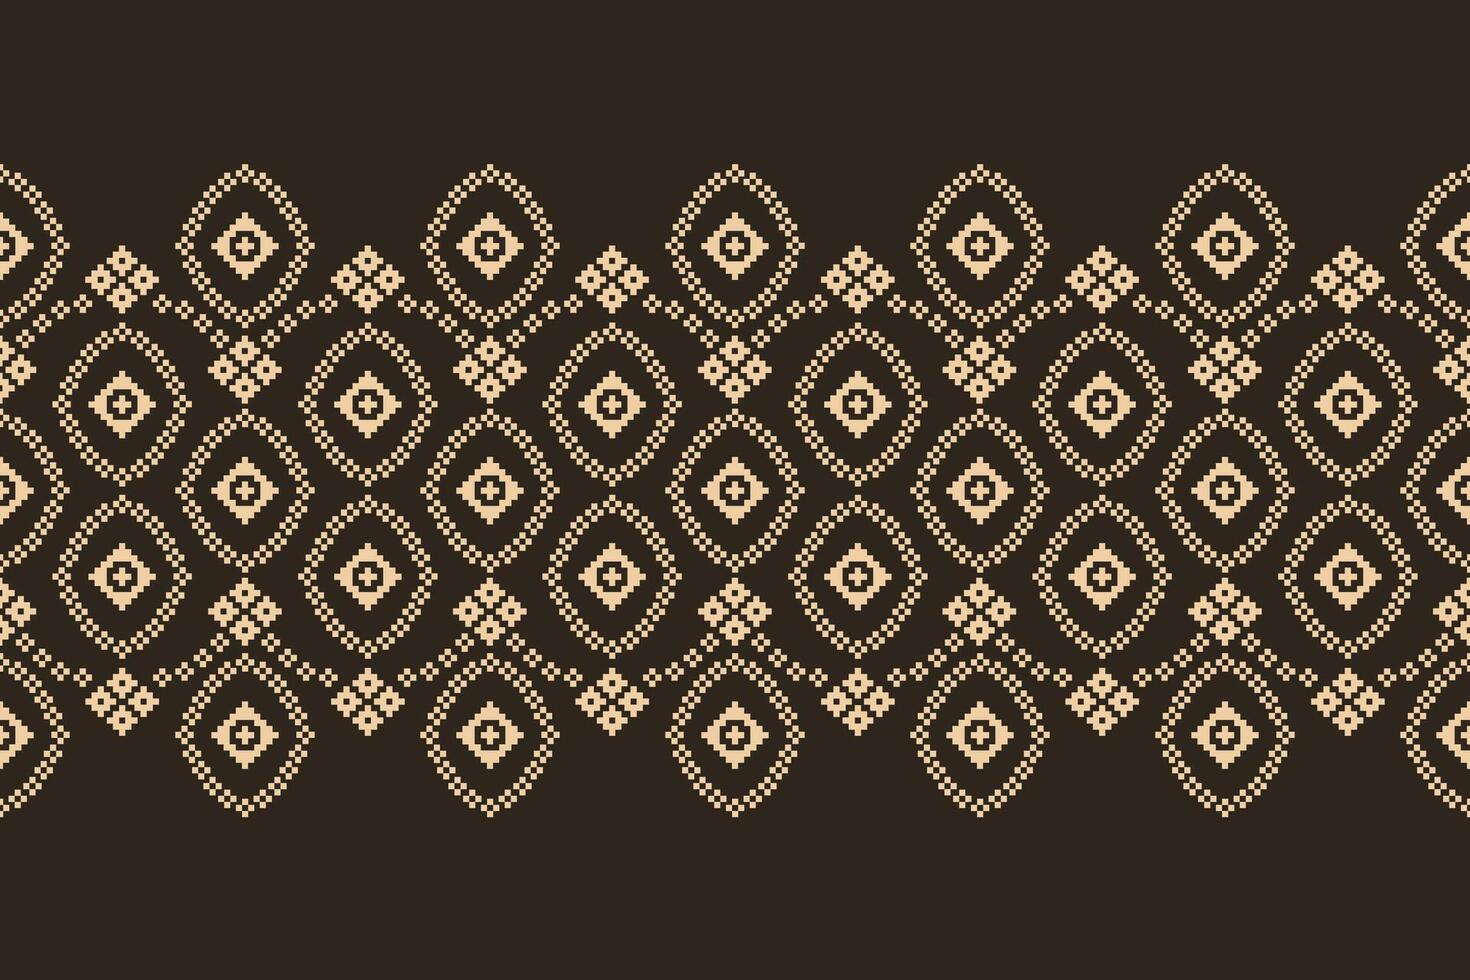 traditionnel noir ethnique motifs ikat géométrique en tissu modèle traverser point.ikat broderie ethnique Oriental pixel marron arrière-plan.abstrait, illustration. texture, décoration, papier peint. vecteur